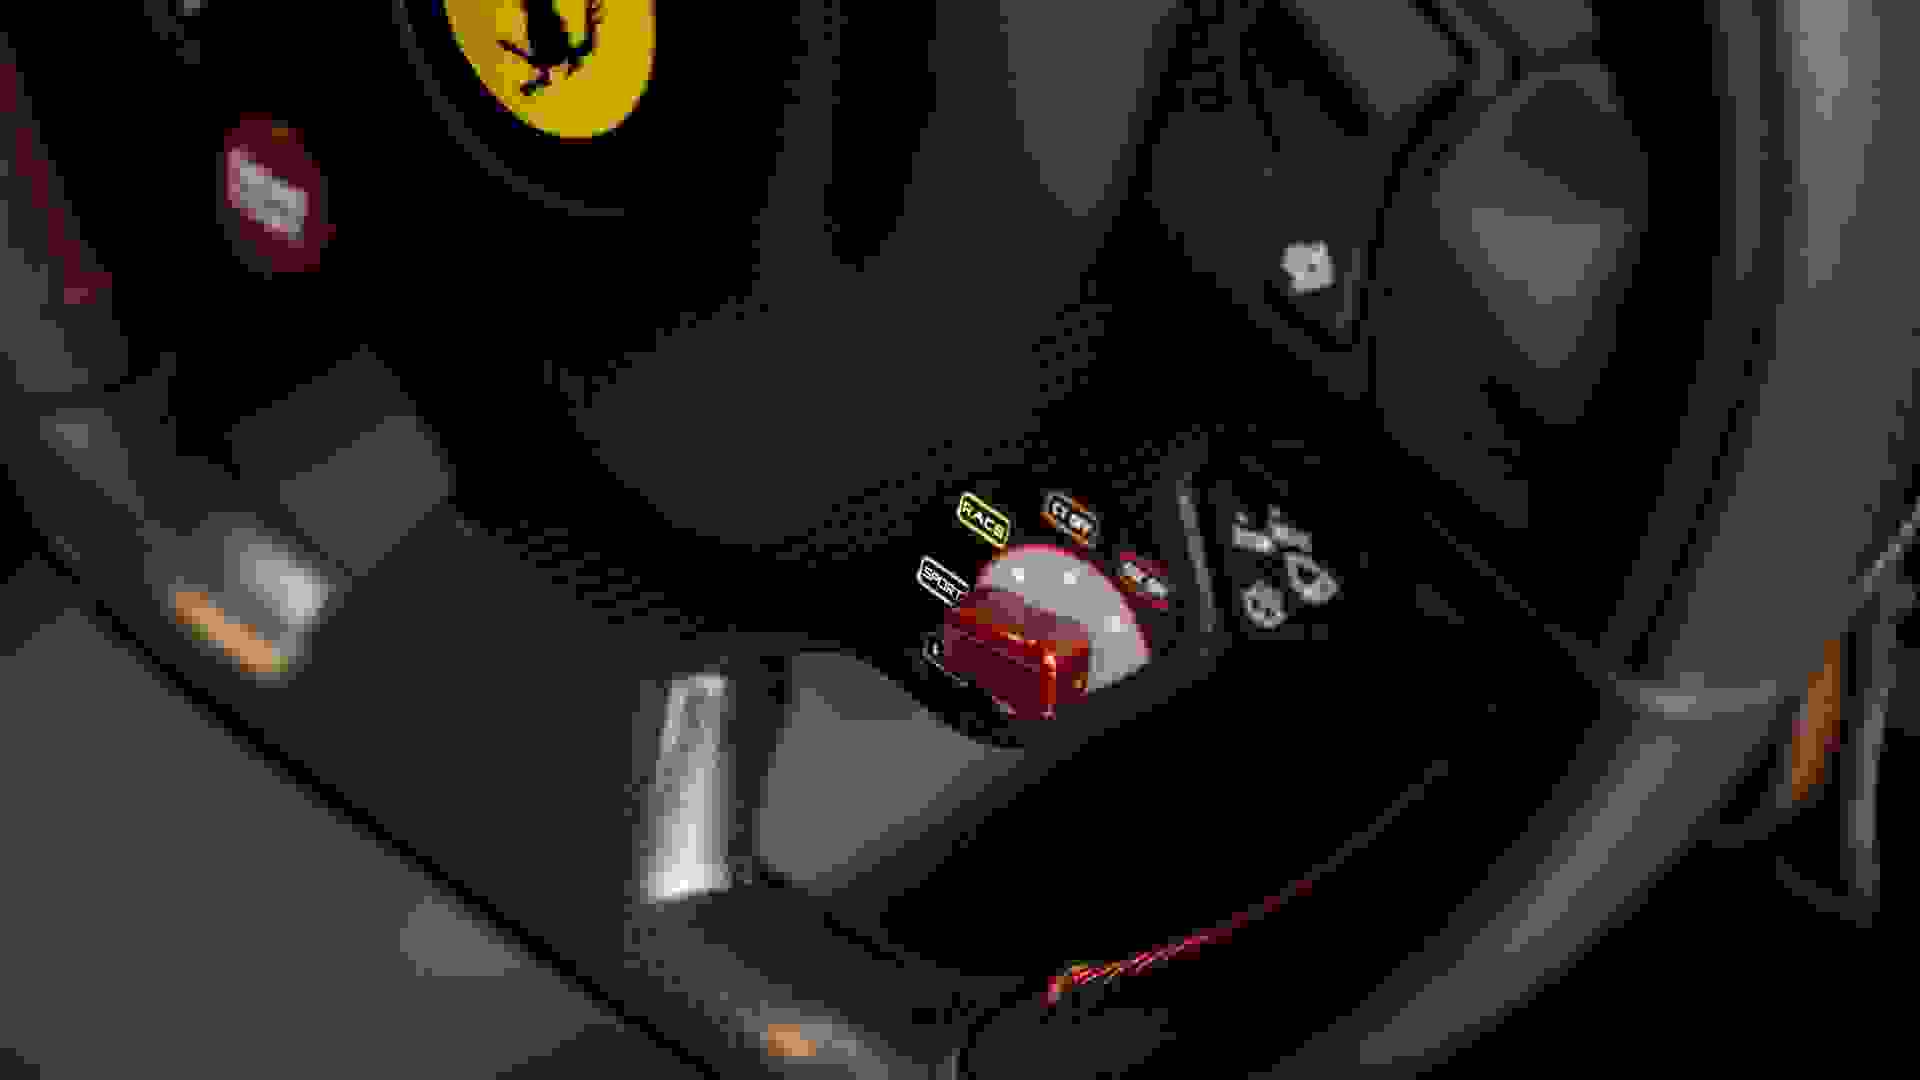 Ferrari F12 Photo 12add224-248a-401e-b5e7-ca8afb81425d.jpg